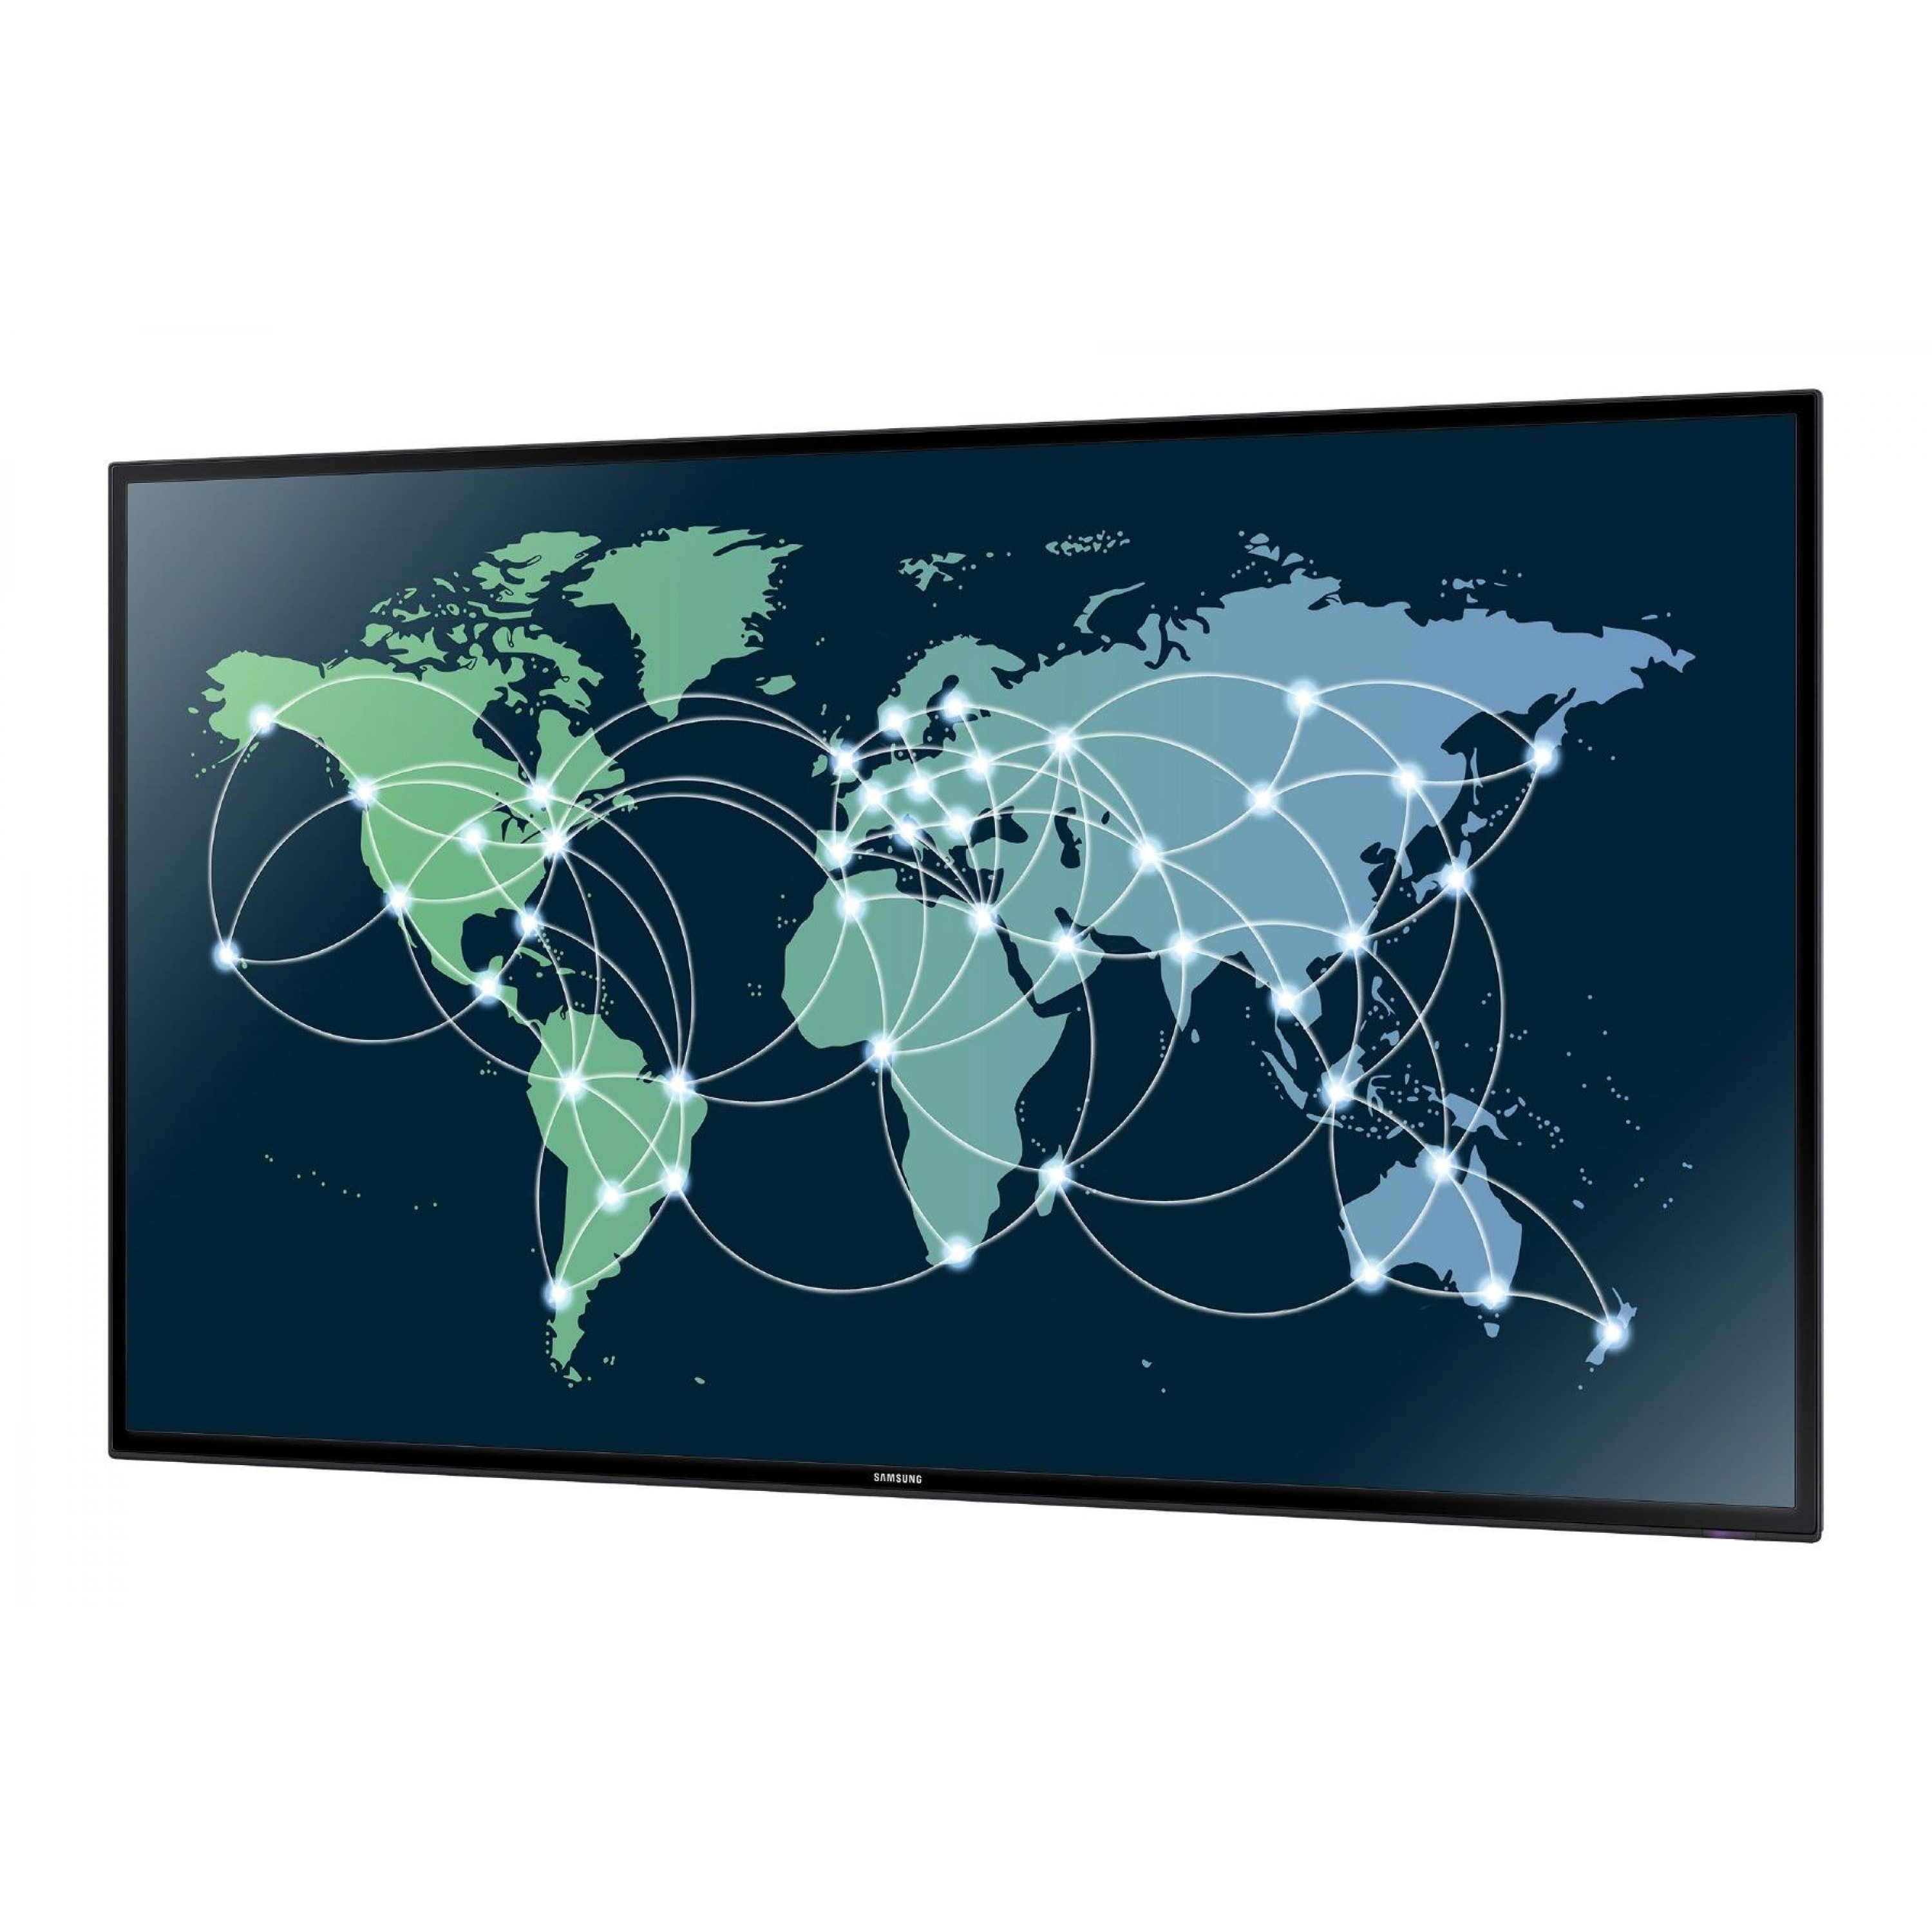 Данные карты в сети. Всемирная сеть на мировой карте. Карта глобального интернета. Мировая сеть интернет карта.